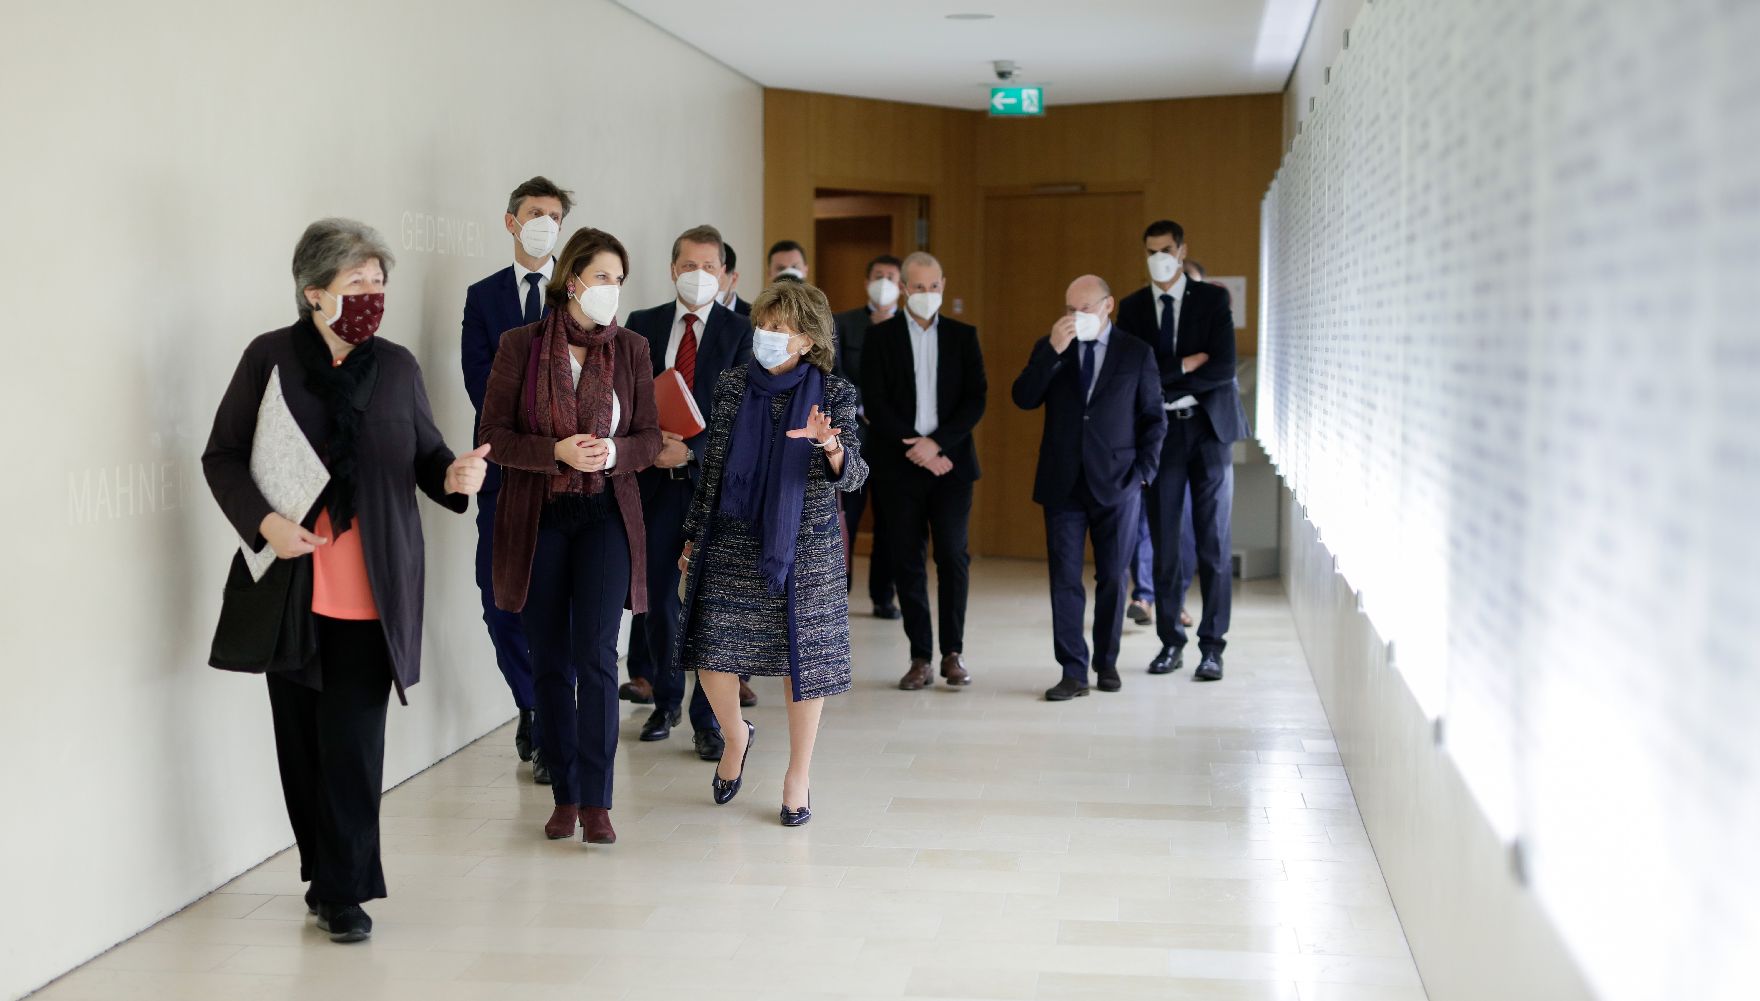 Am 27. Oktober 2020 besuchte Bundesministerin Karoline Edtstadler im Rahmen ihres München Besuchs die Israelische Kultusgemeinde München und Oberbayern.